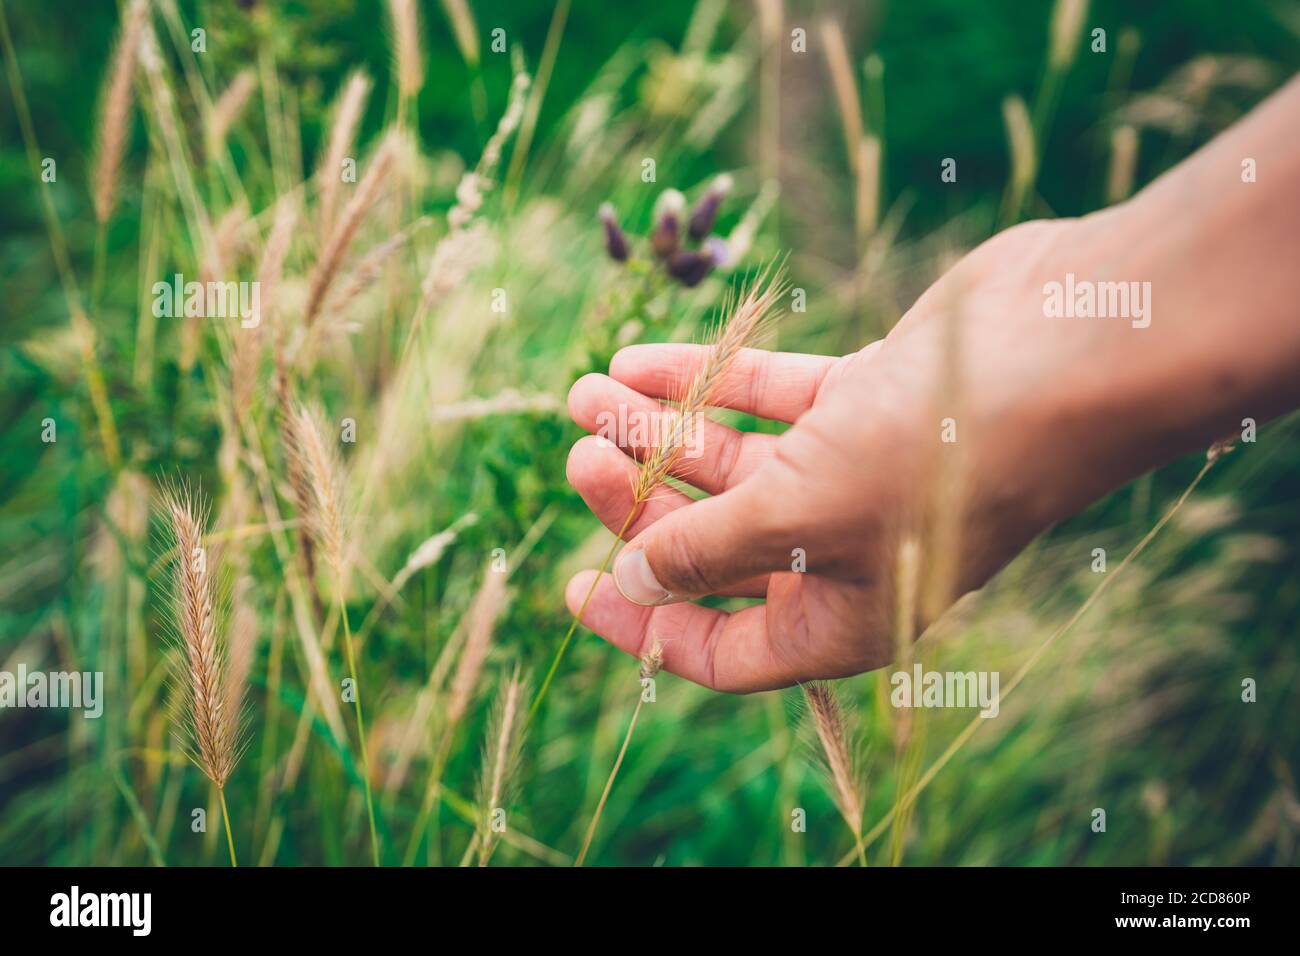 La main d'une jeune femme touche un peu longtemps herbe Banque D'Images